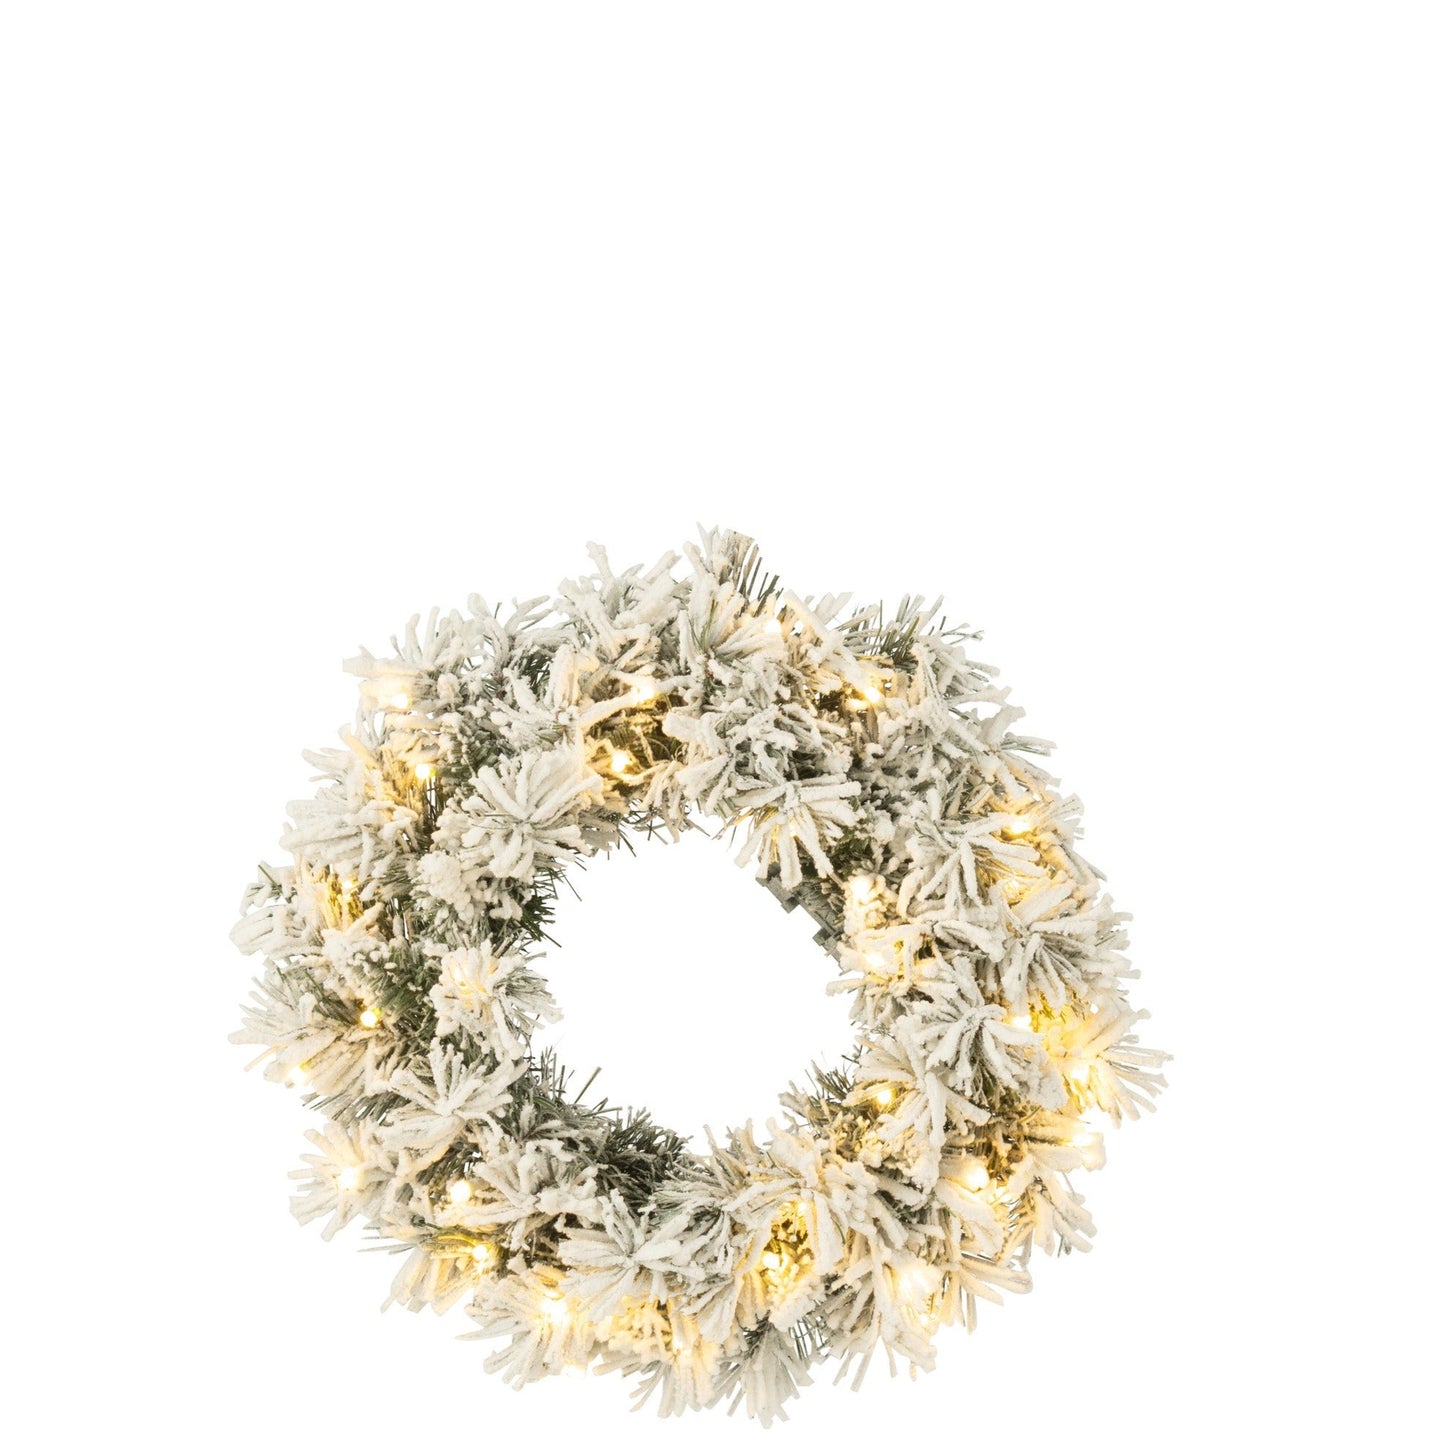 White PVC Wreath W/ Led